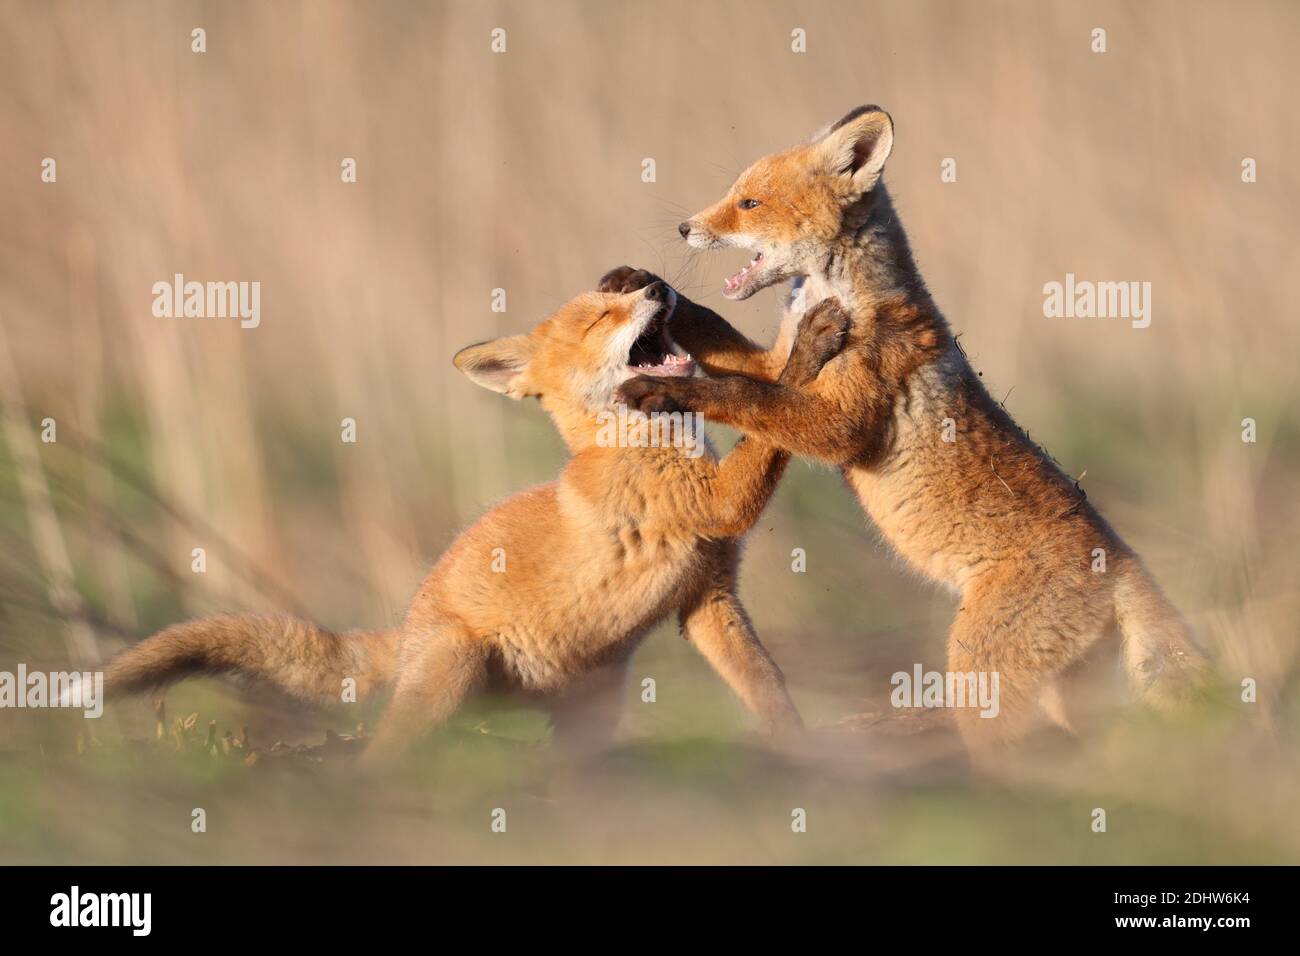 Los cachorros de zorro rojo (vulpes vulpes) juegan luchando alrededor de su sitio de estudio. Estonia, Europa Foto de stock